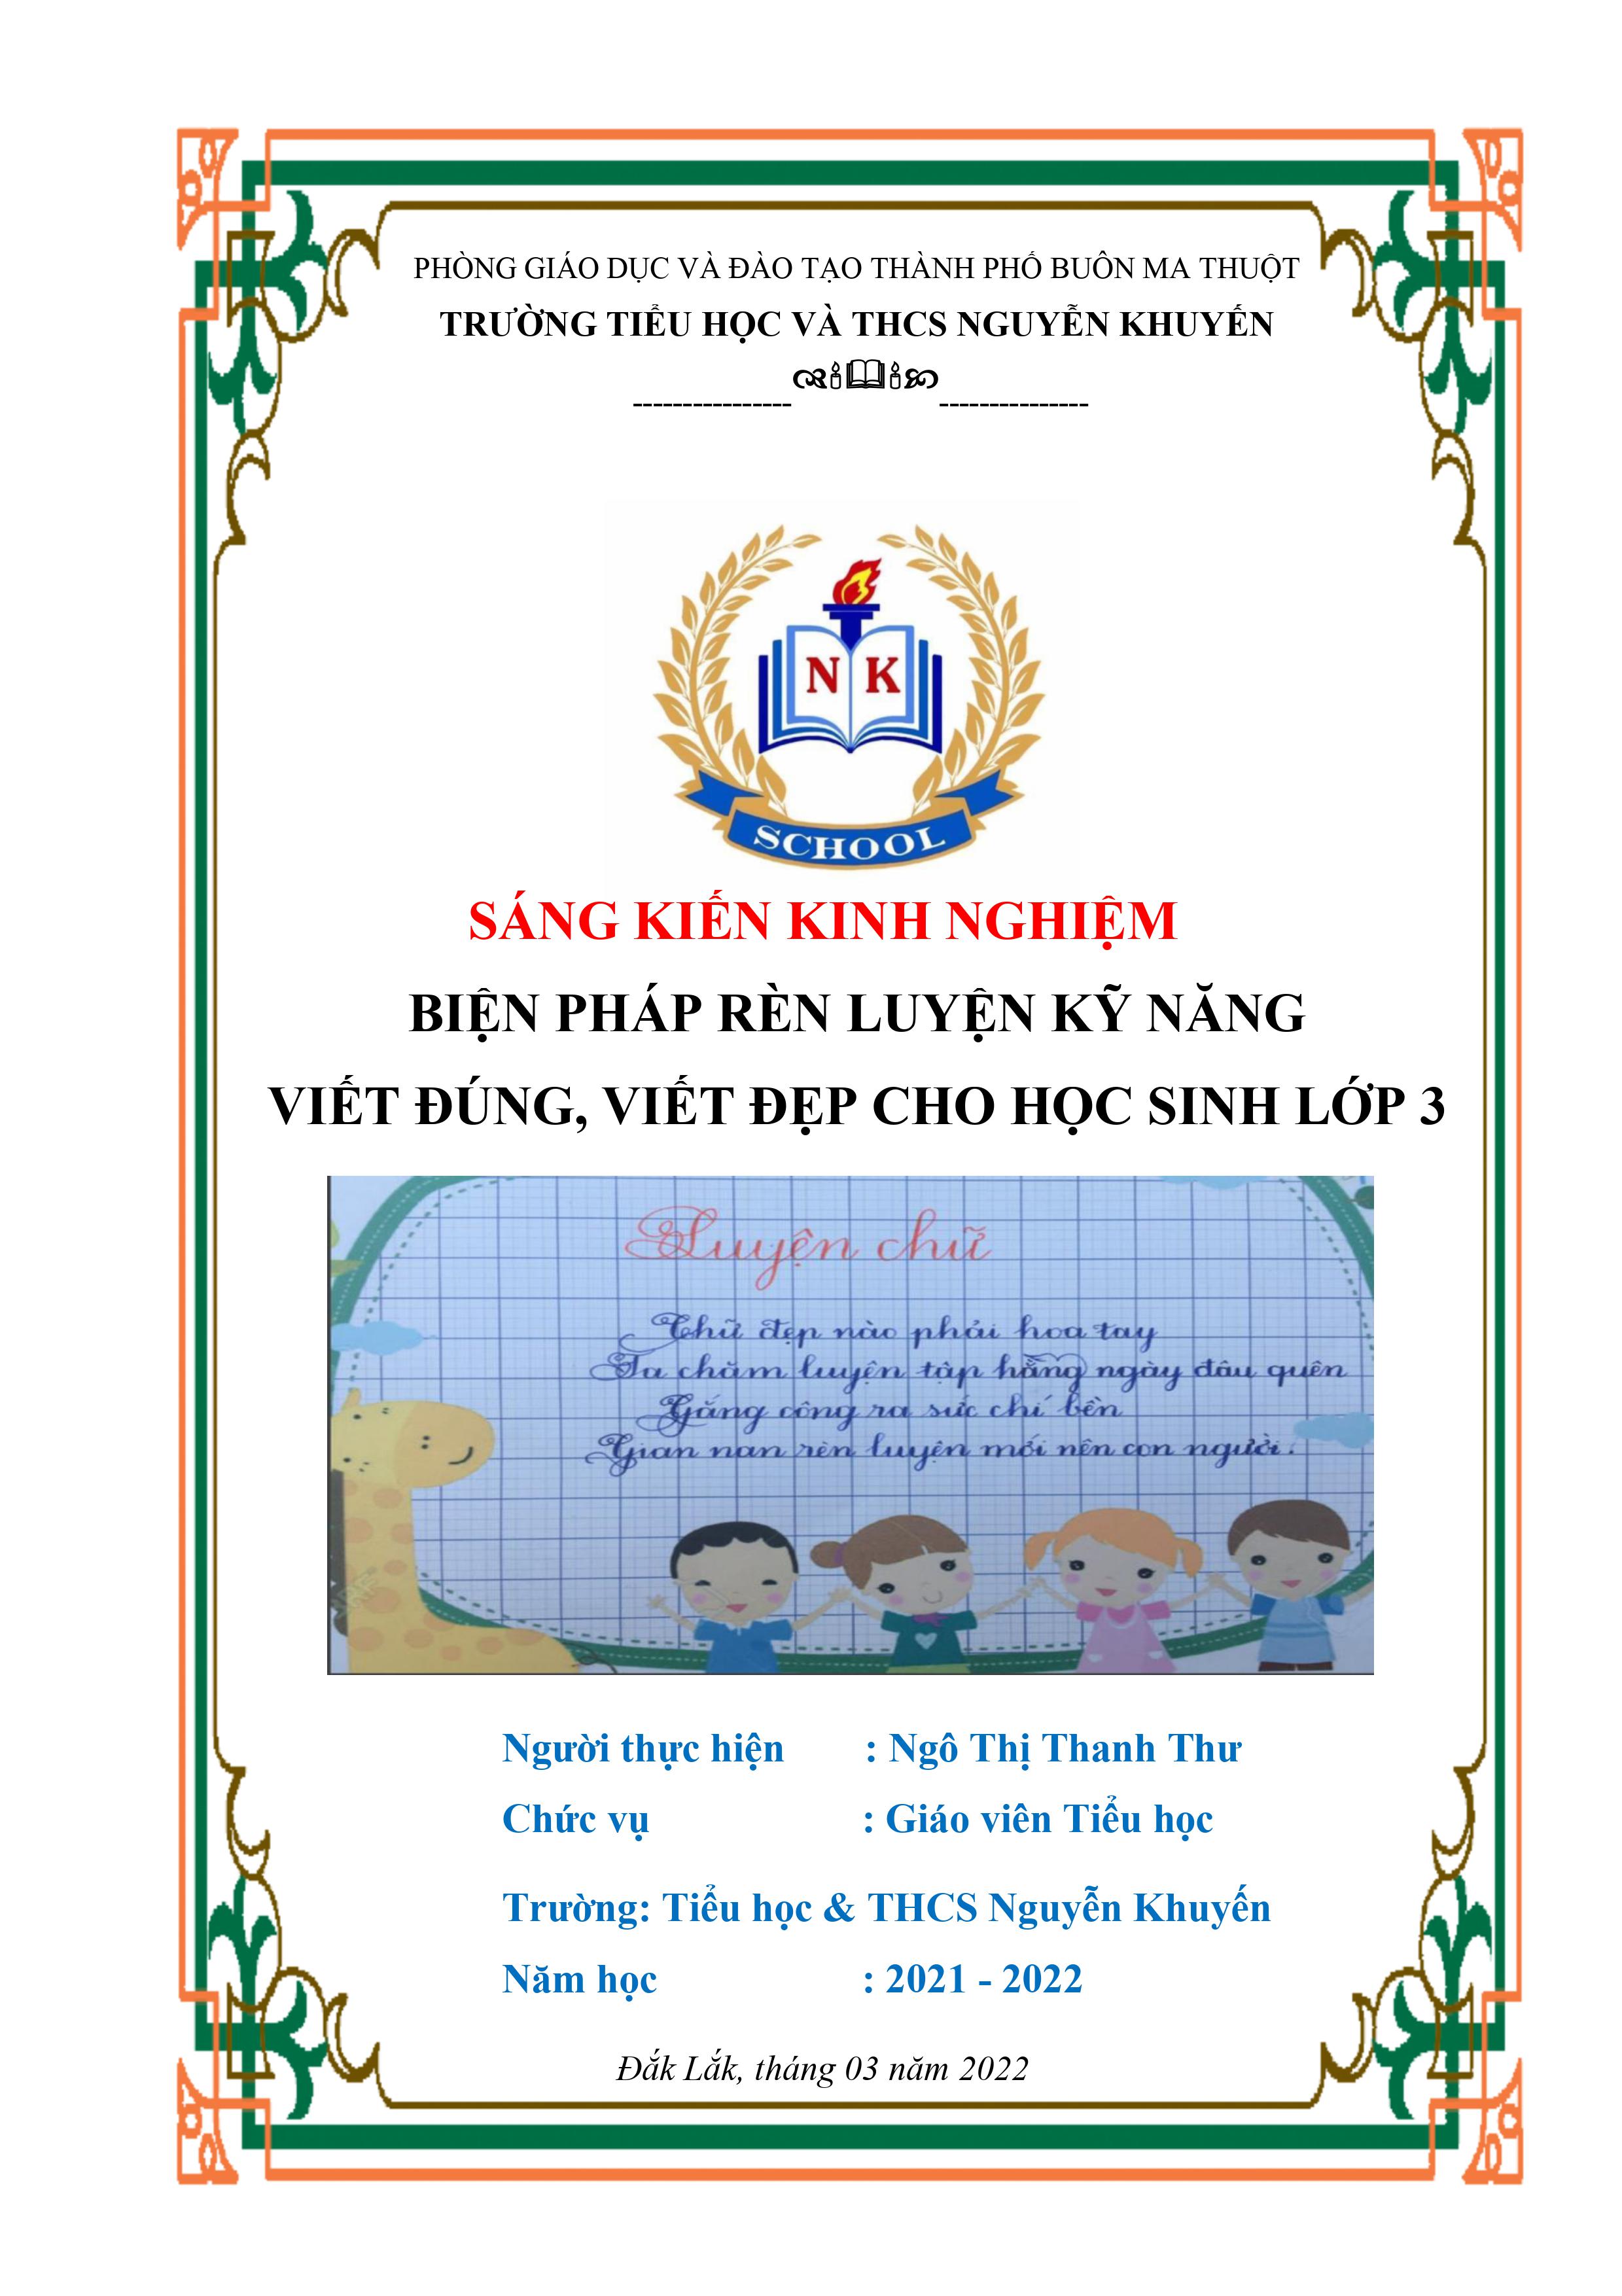 Biện pháp rèn luyện kỹ năng viết đúng, viết đẹp cho học sinh lớp 3 trường Tiểu học và Trung học cơ sở Nguyễn Khuyến.